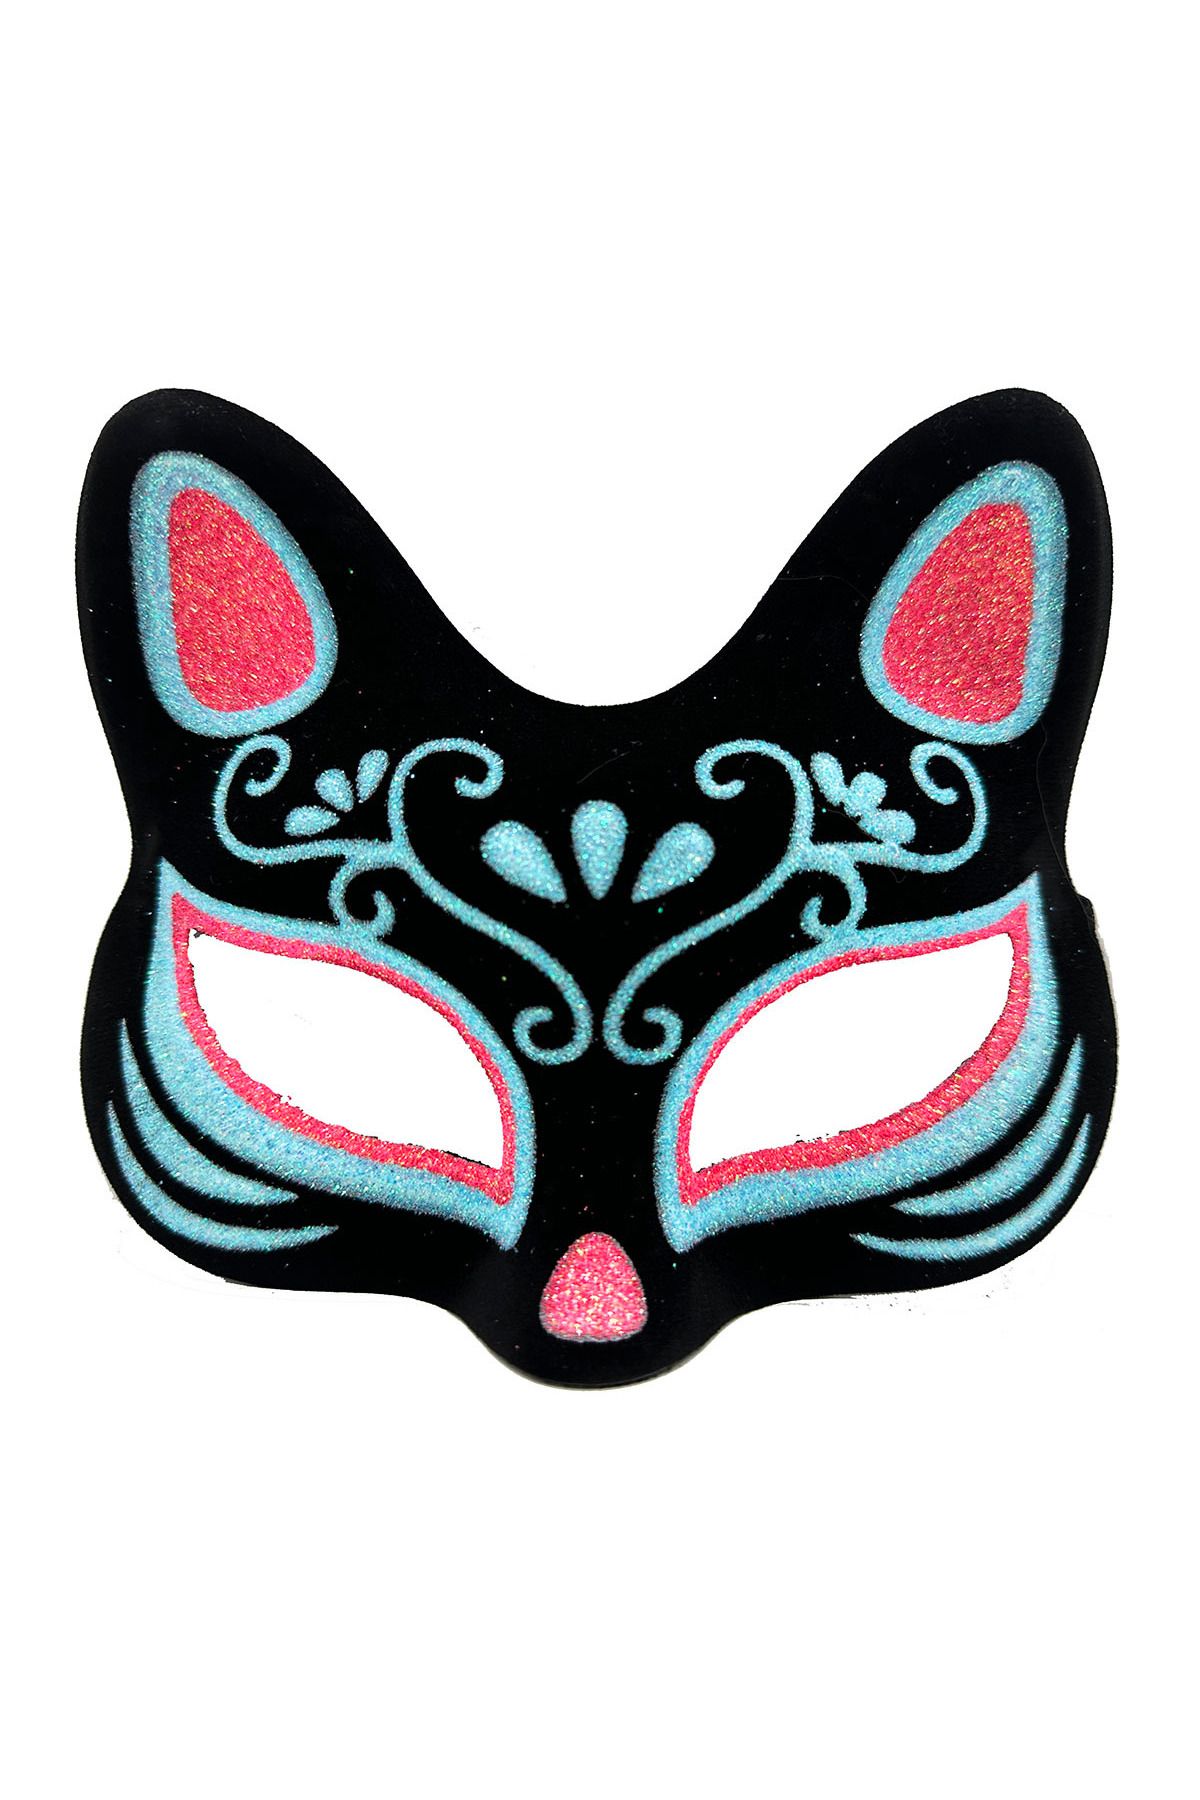 Skygo Siyah Renk Üzeri Mavi Kırmızı Simli Süet Kaplama Kedi Maskesi 17x14 cm